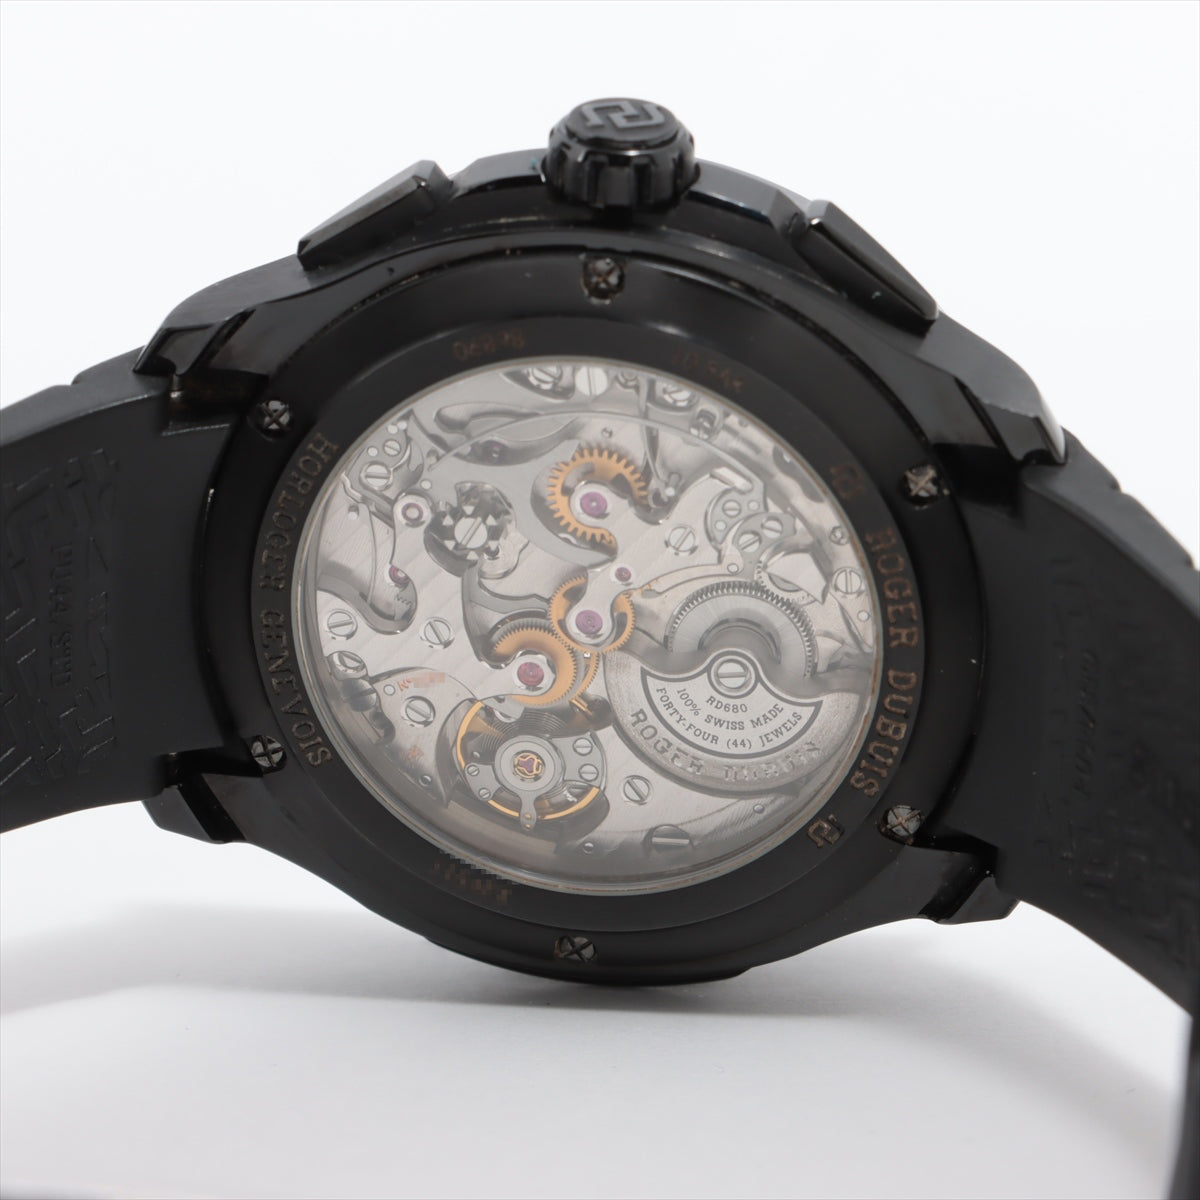 ロジェ・デュブイ ROGER DUBUIS 腕時計 パルジョン DBPU0005 クロノグラフ スモールセコンド 裏スケ コートドジュネーブ ペルラージュ ギョーシェ スケルトン文字盤 チタン(ブラックDLC) ブラック ラバー ベルト 黒 自動巻き